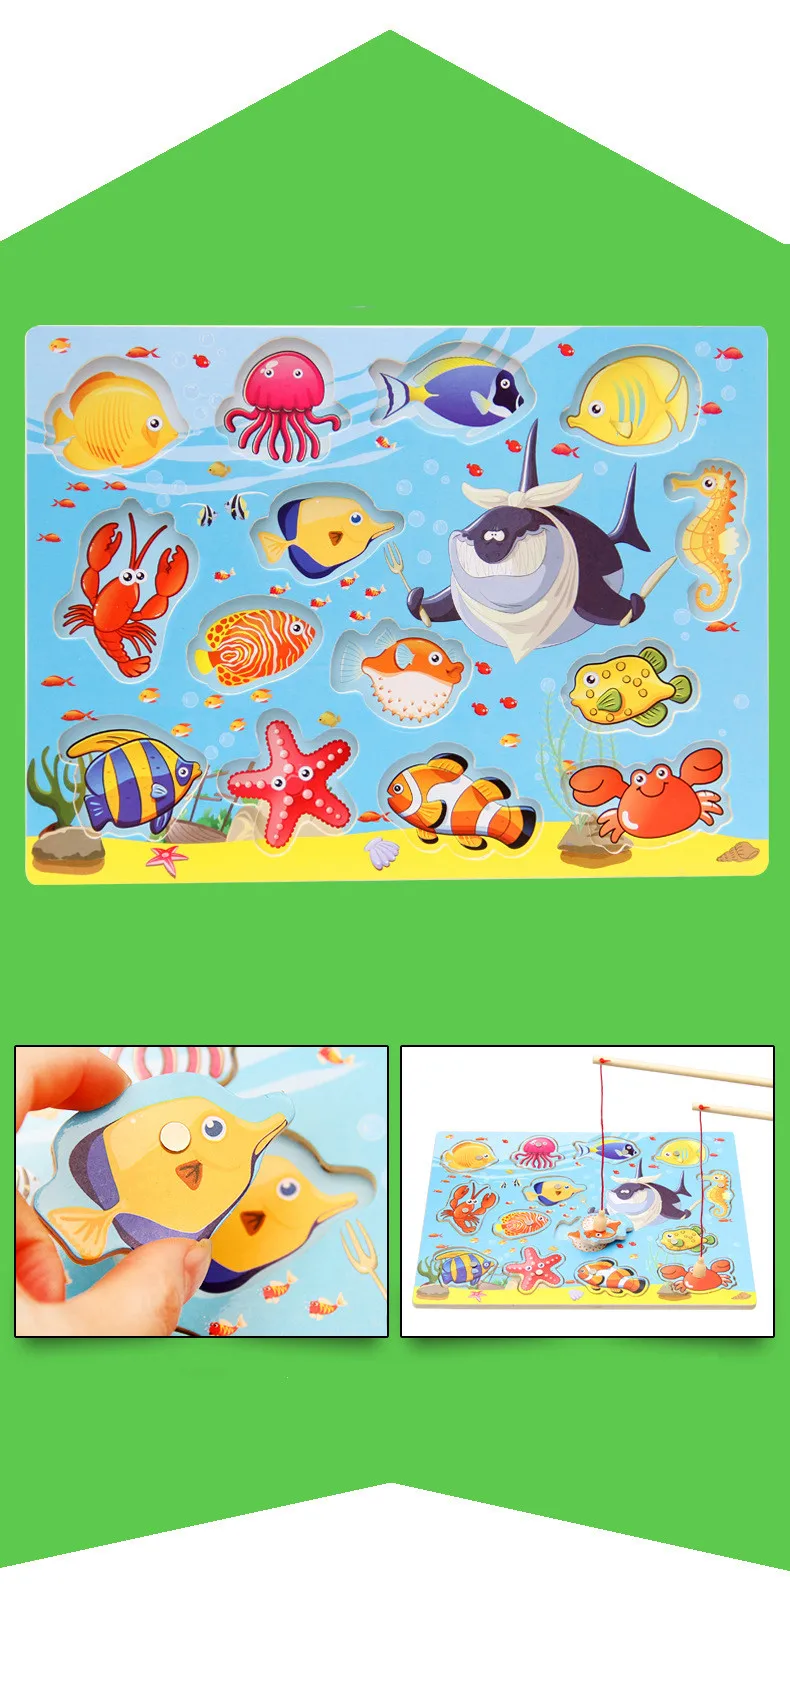 Забавные удочки деревянные игрушки для детей Магнитные игры рыбалка игра Обучающие игрушки Наборы для маленьких мальчиков и девочек